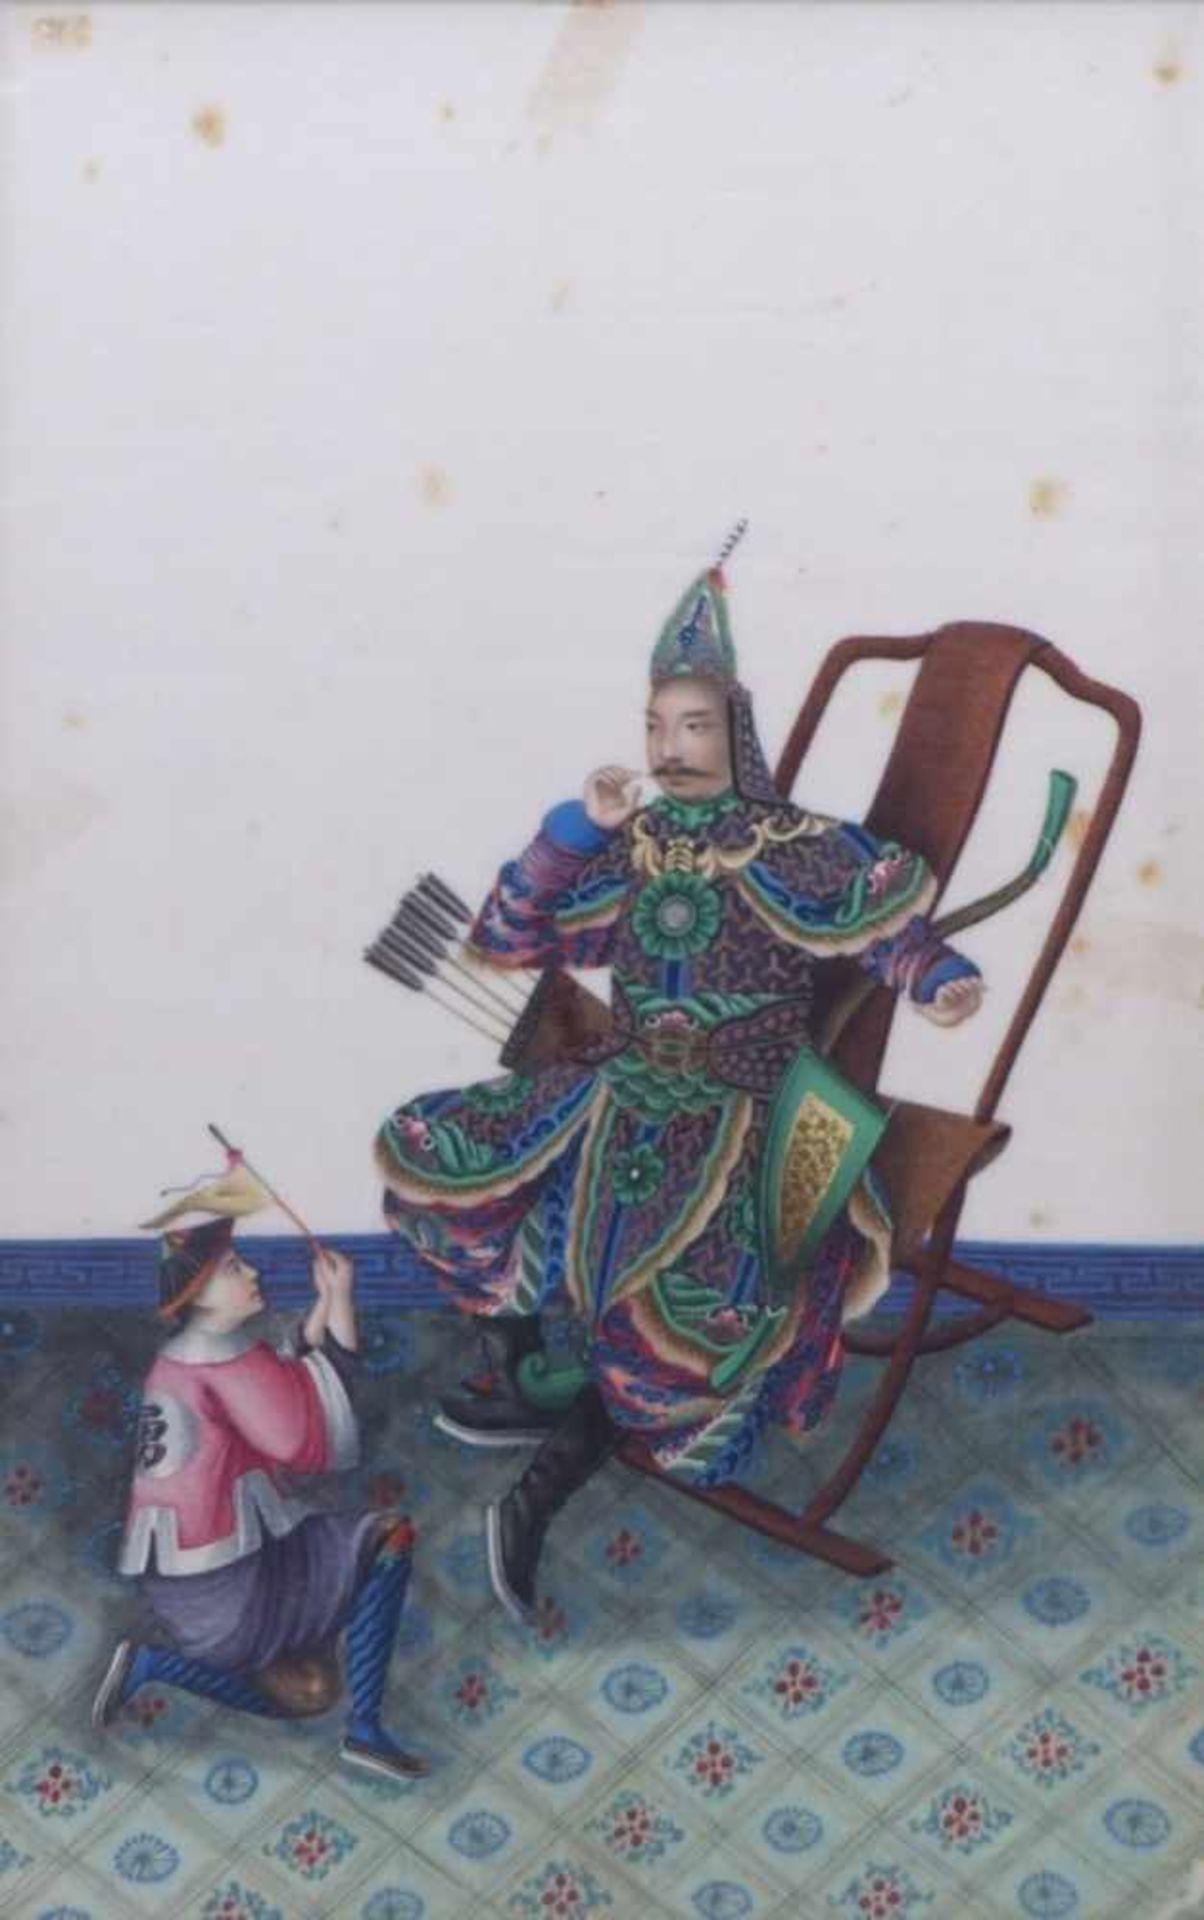 Höfisches Interieur mit auf einem Stuhl sitzenden KriegerChina, Qing-Dynastie - 19. Jh.Gouache/